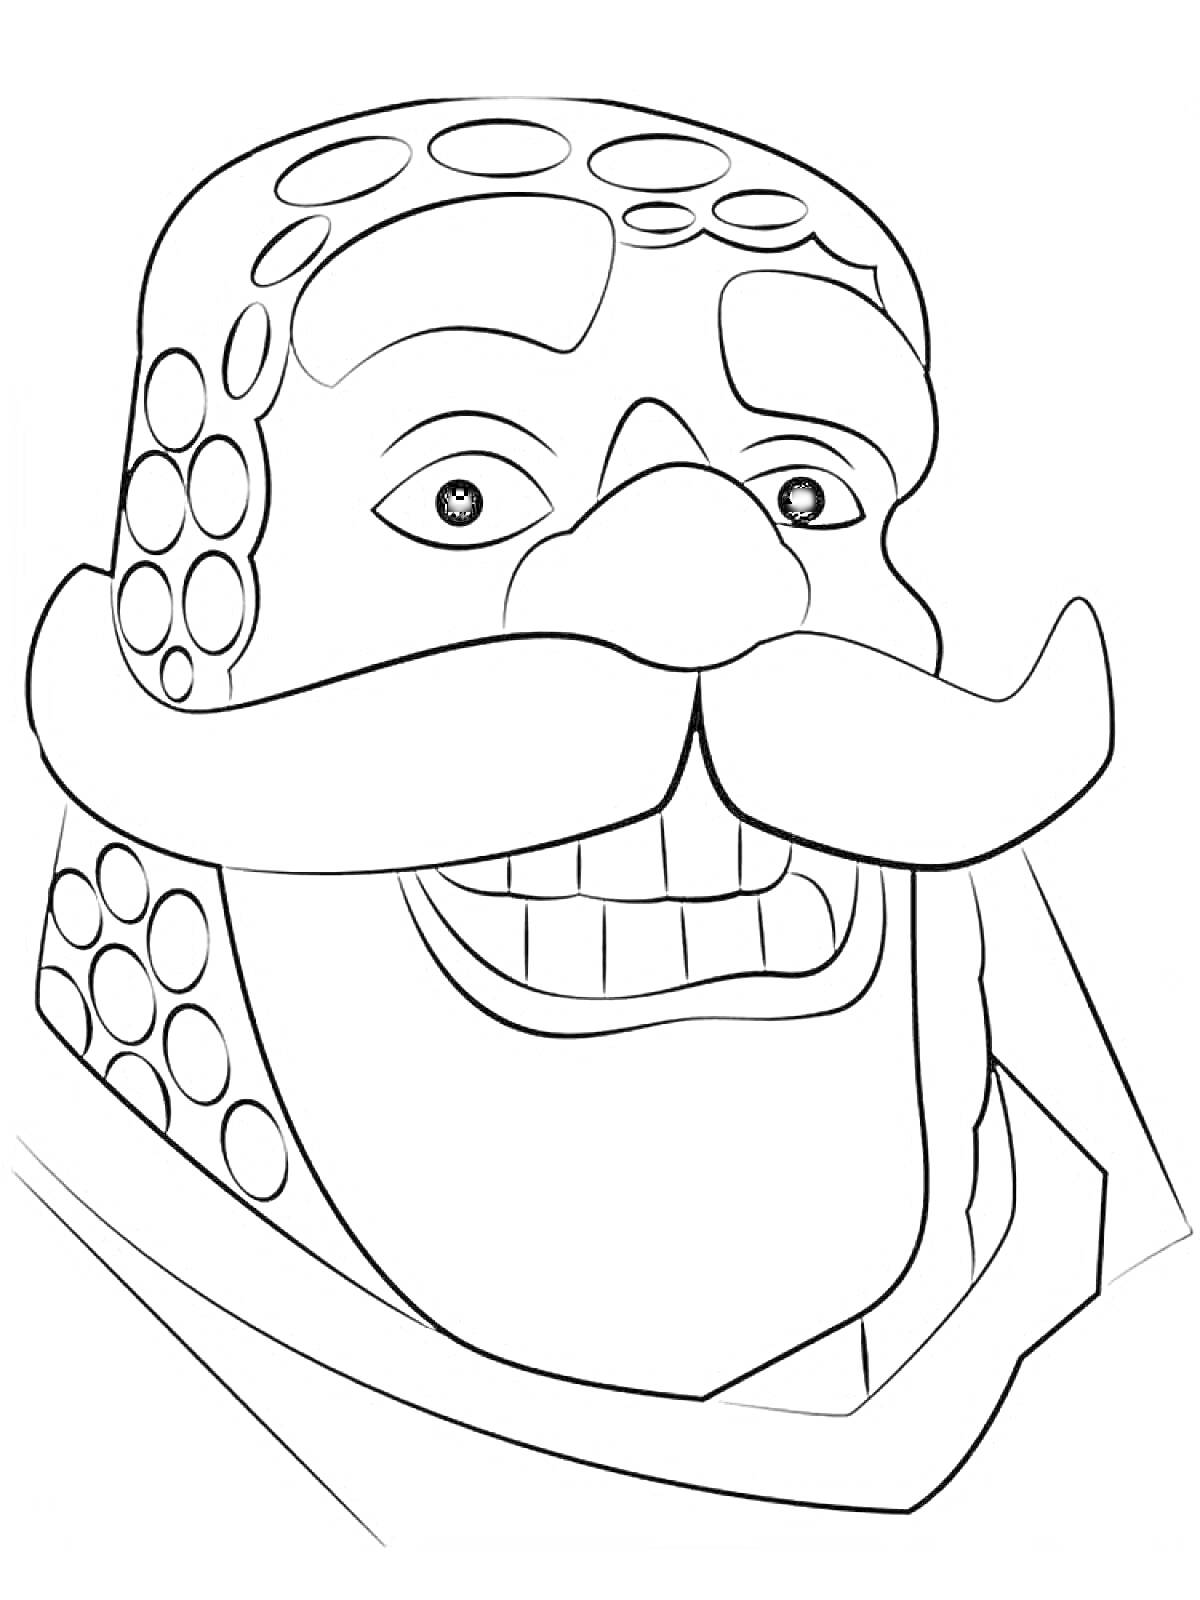 Раскраска Лицо персонажа с усами и чешуйчатым шлемом из игры Clash Royale